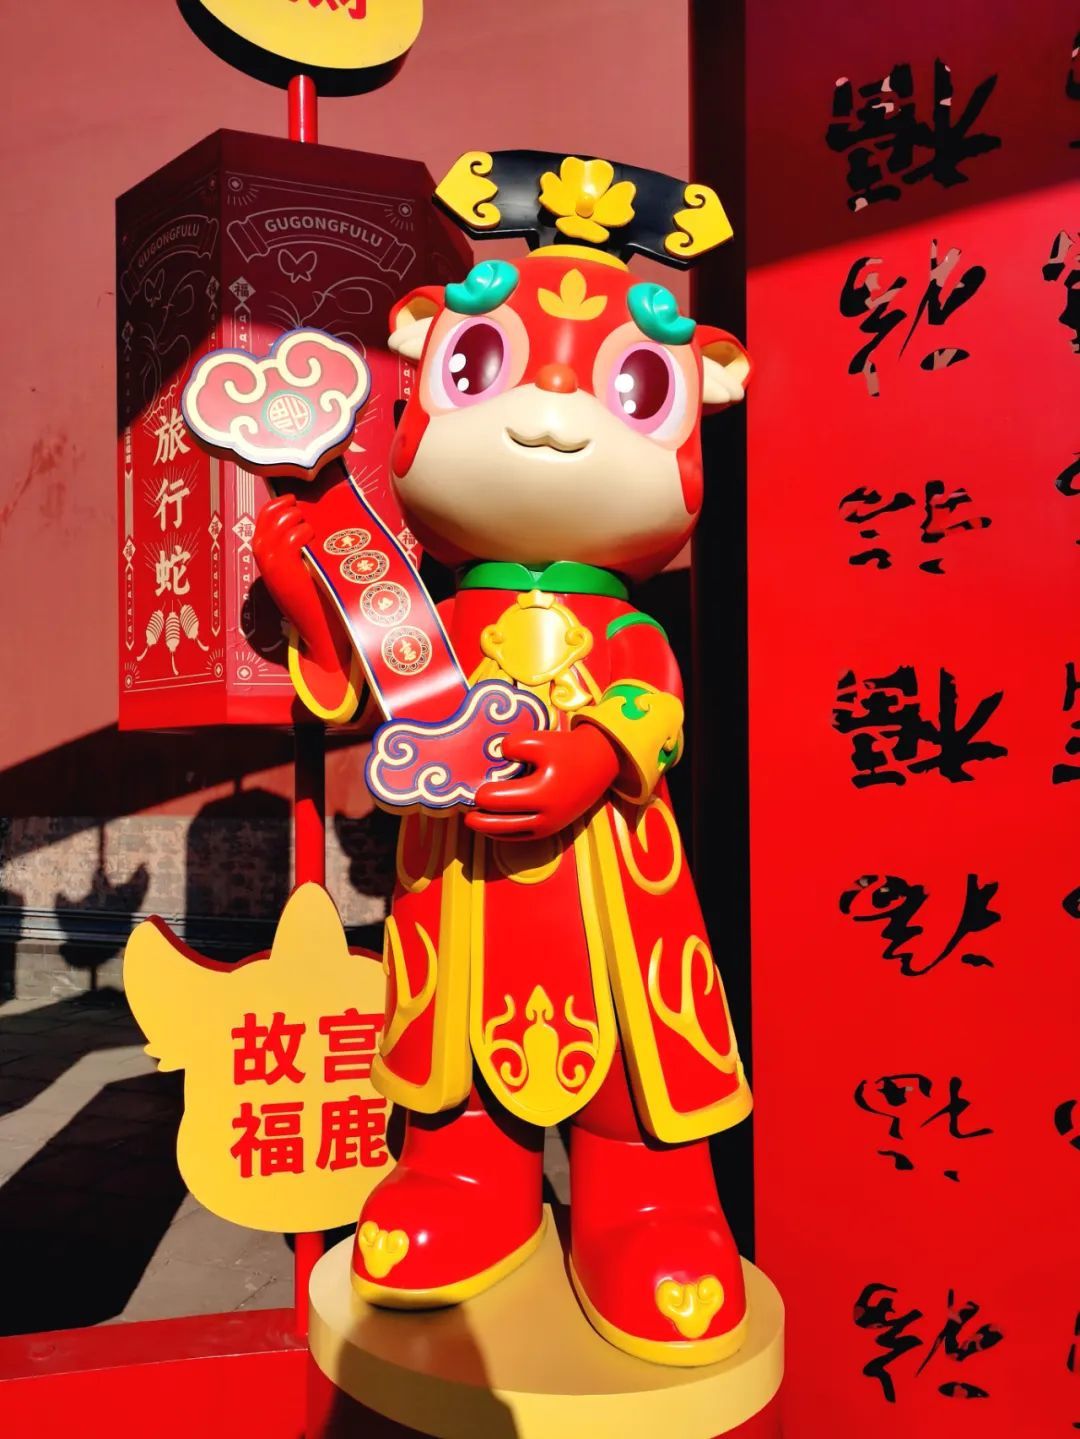 沈阳故宫博物院新春文化景观“祥龙纳吉 福鹿献瑞”正式与观众见面